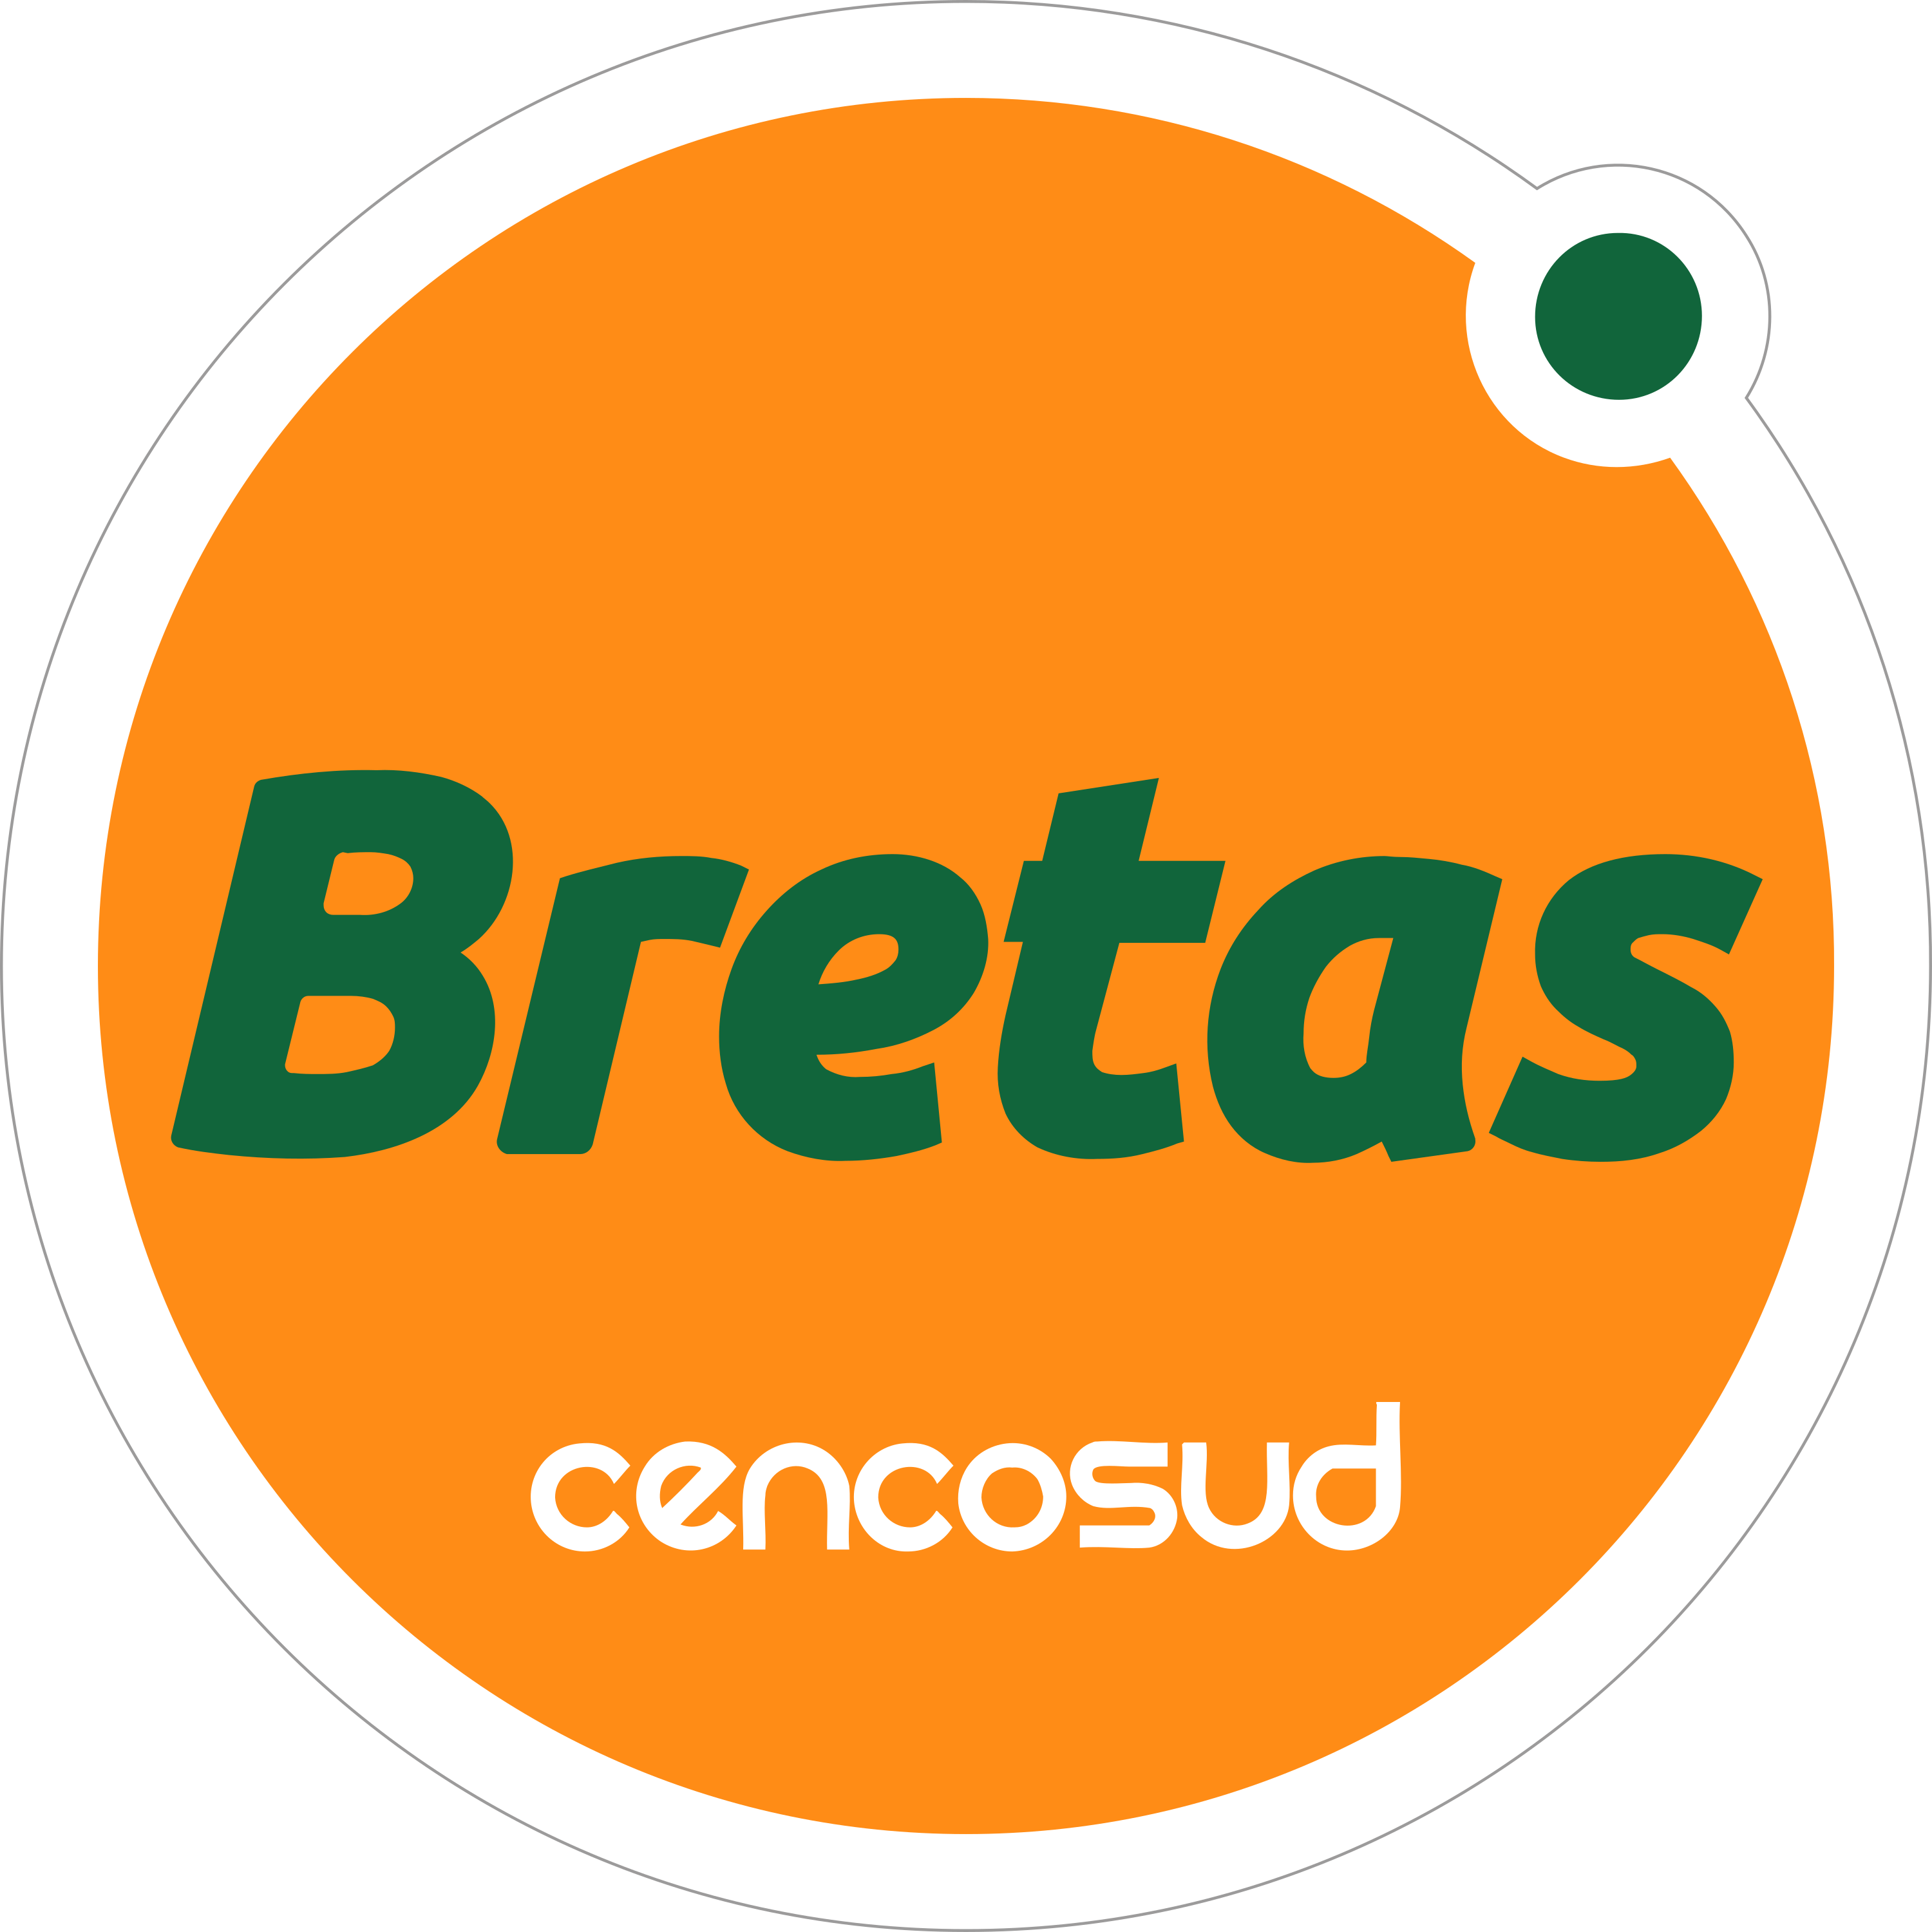 Bretas Logo Transparent Image